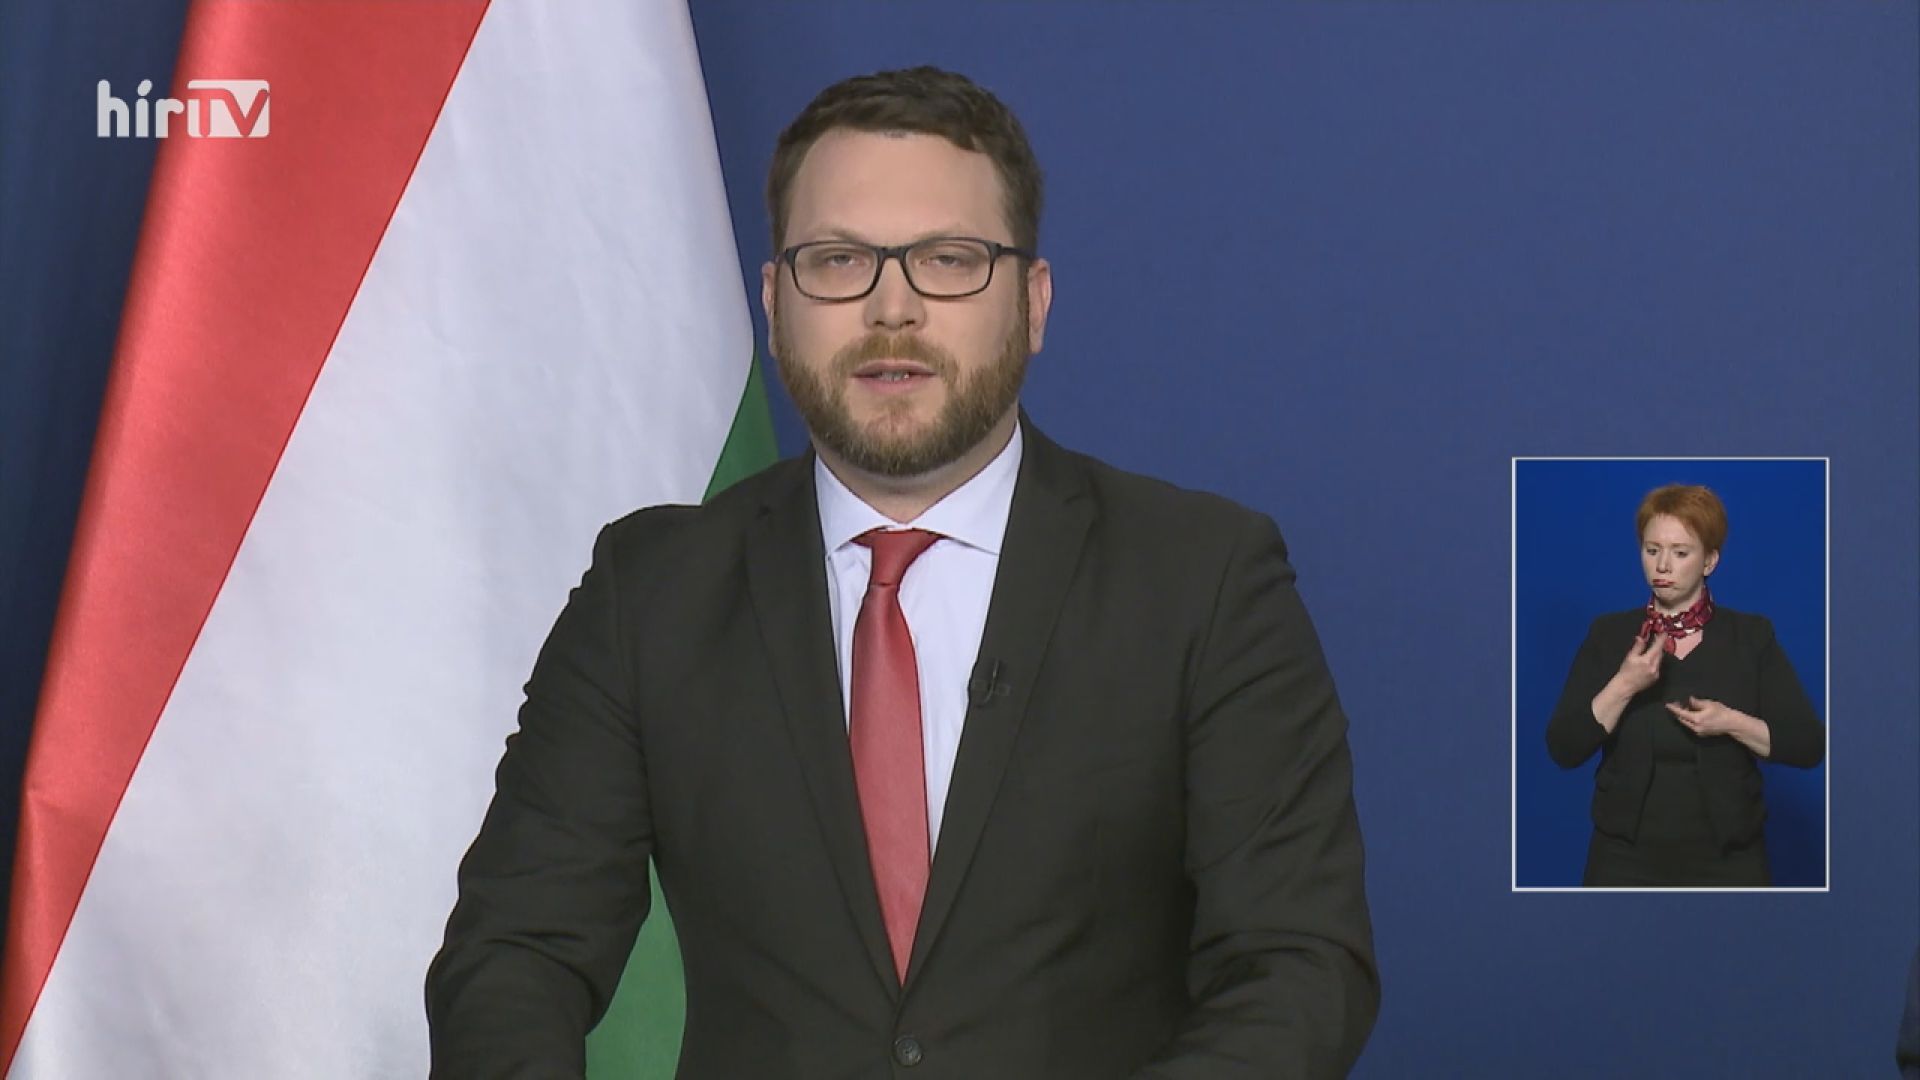 Schanda Tamás: Fokozatosan, szigorú menetrend mellett kezdtük el újraindítani az életet Magyarországon